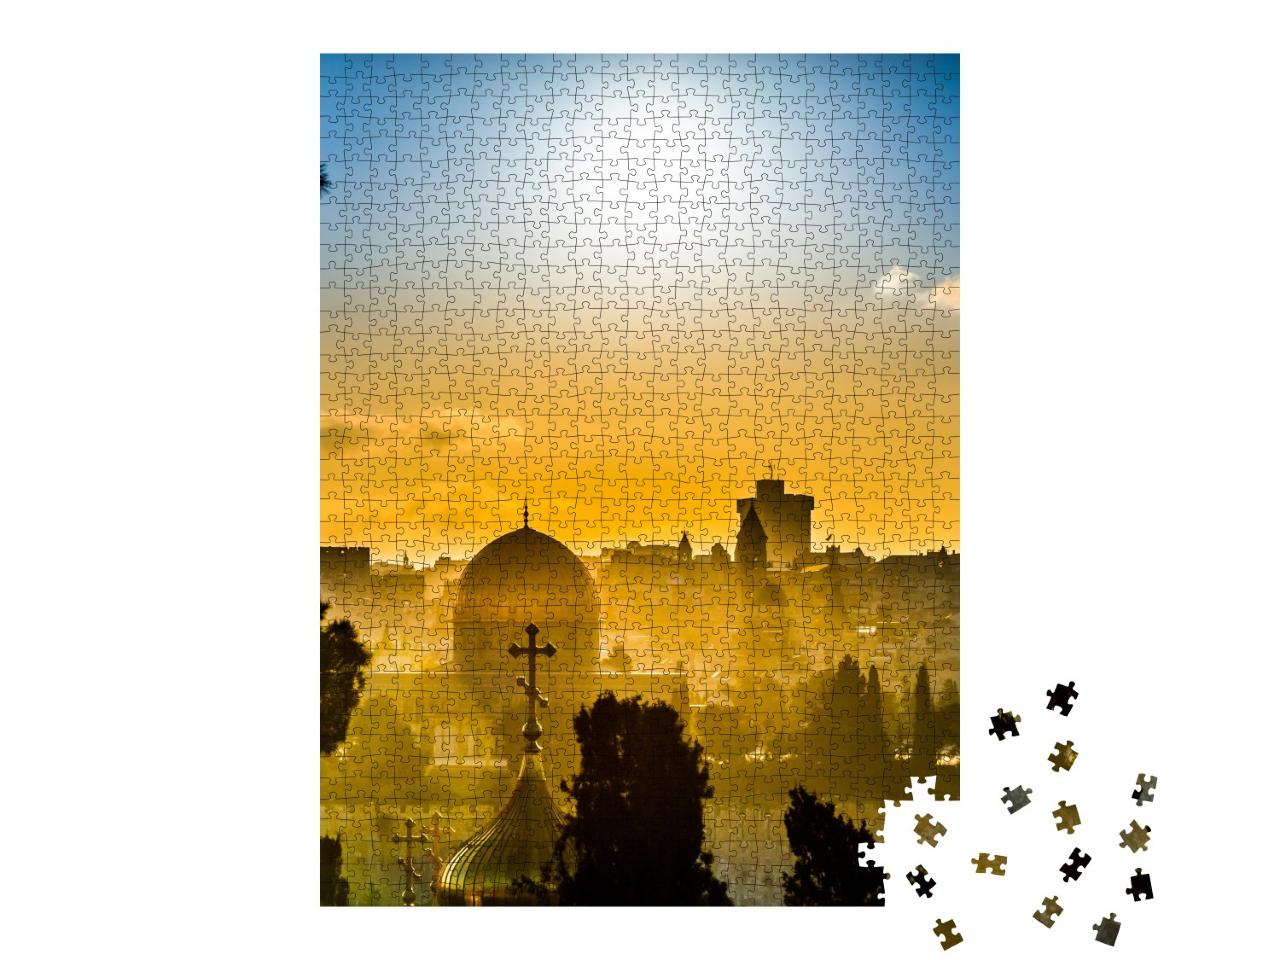 Puzzle de 1000 pièces « Les toits de Jérusalem dans la lumière dorée du coucher de soleil »